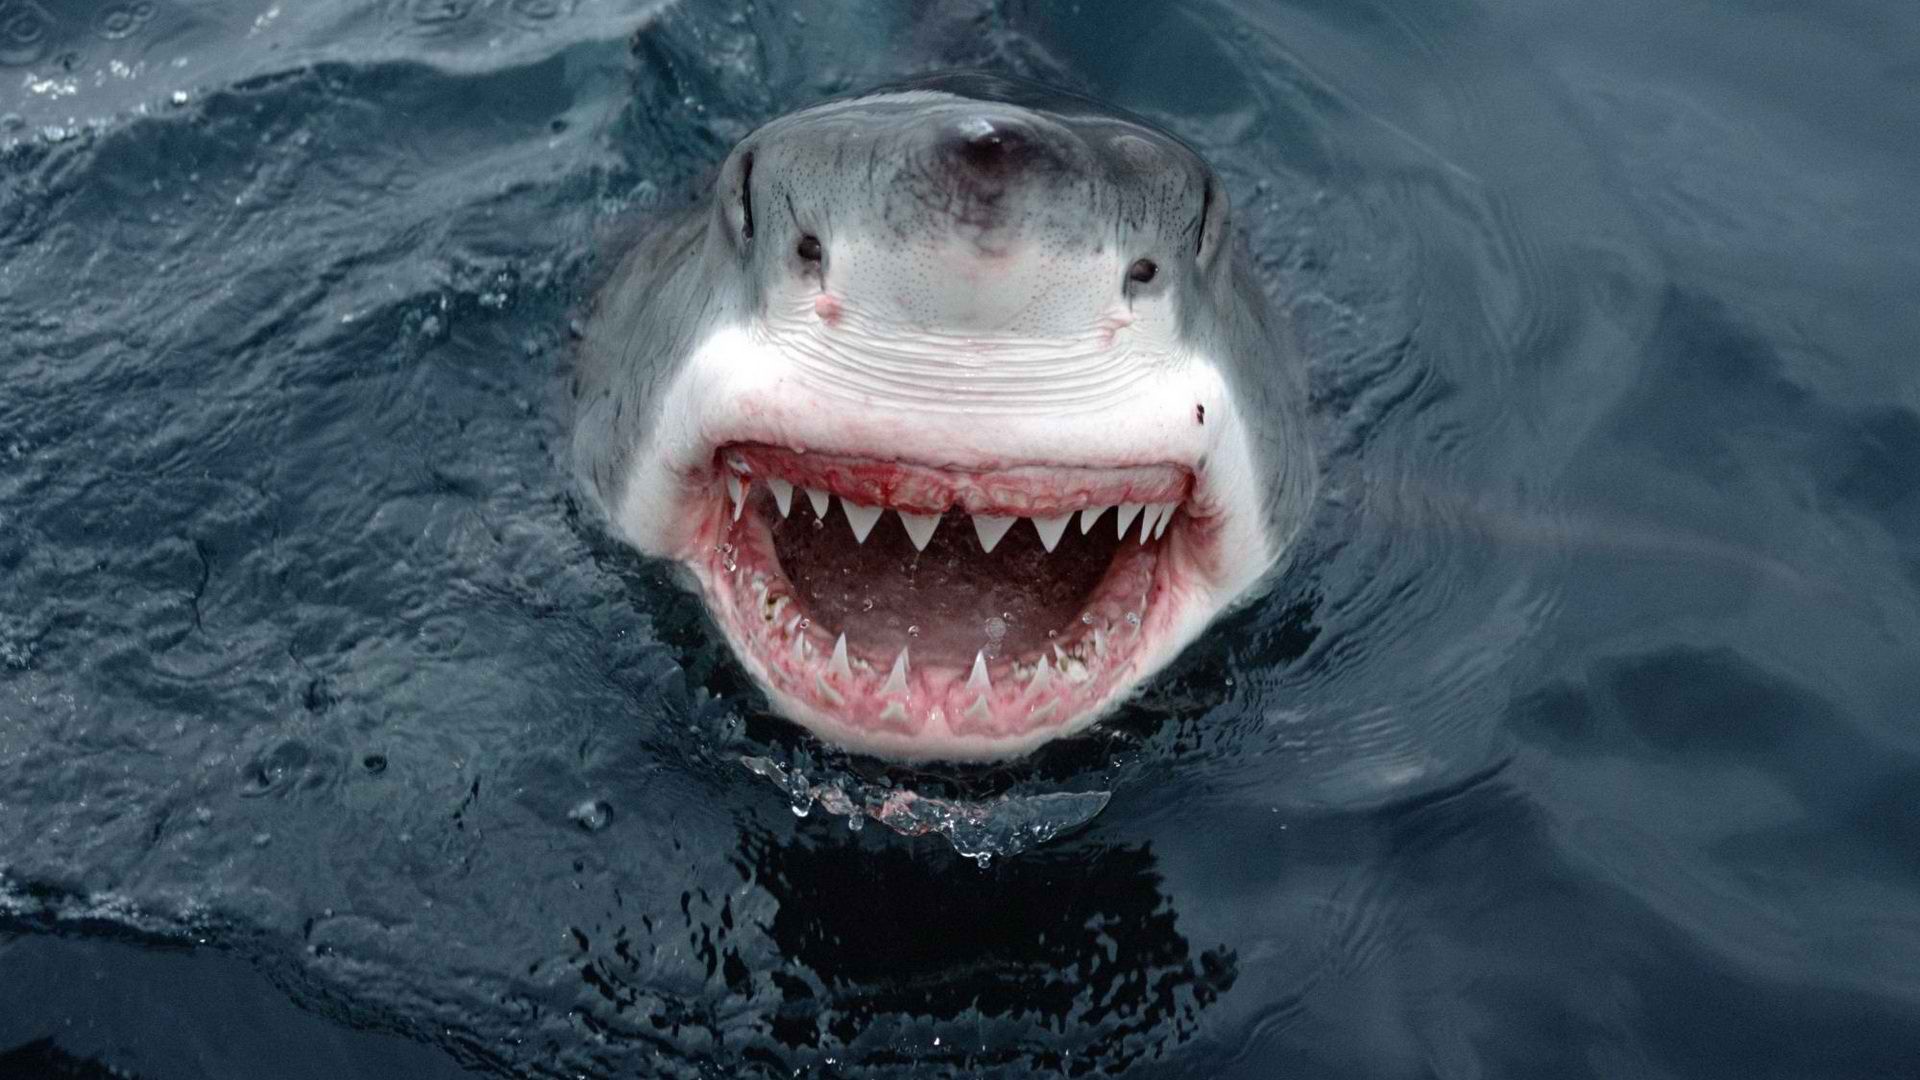 sharks, south australia, great white shark - desktop wallpaper